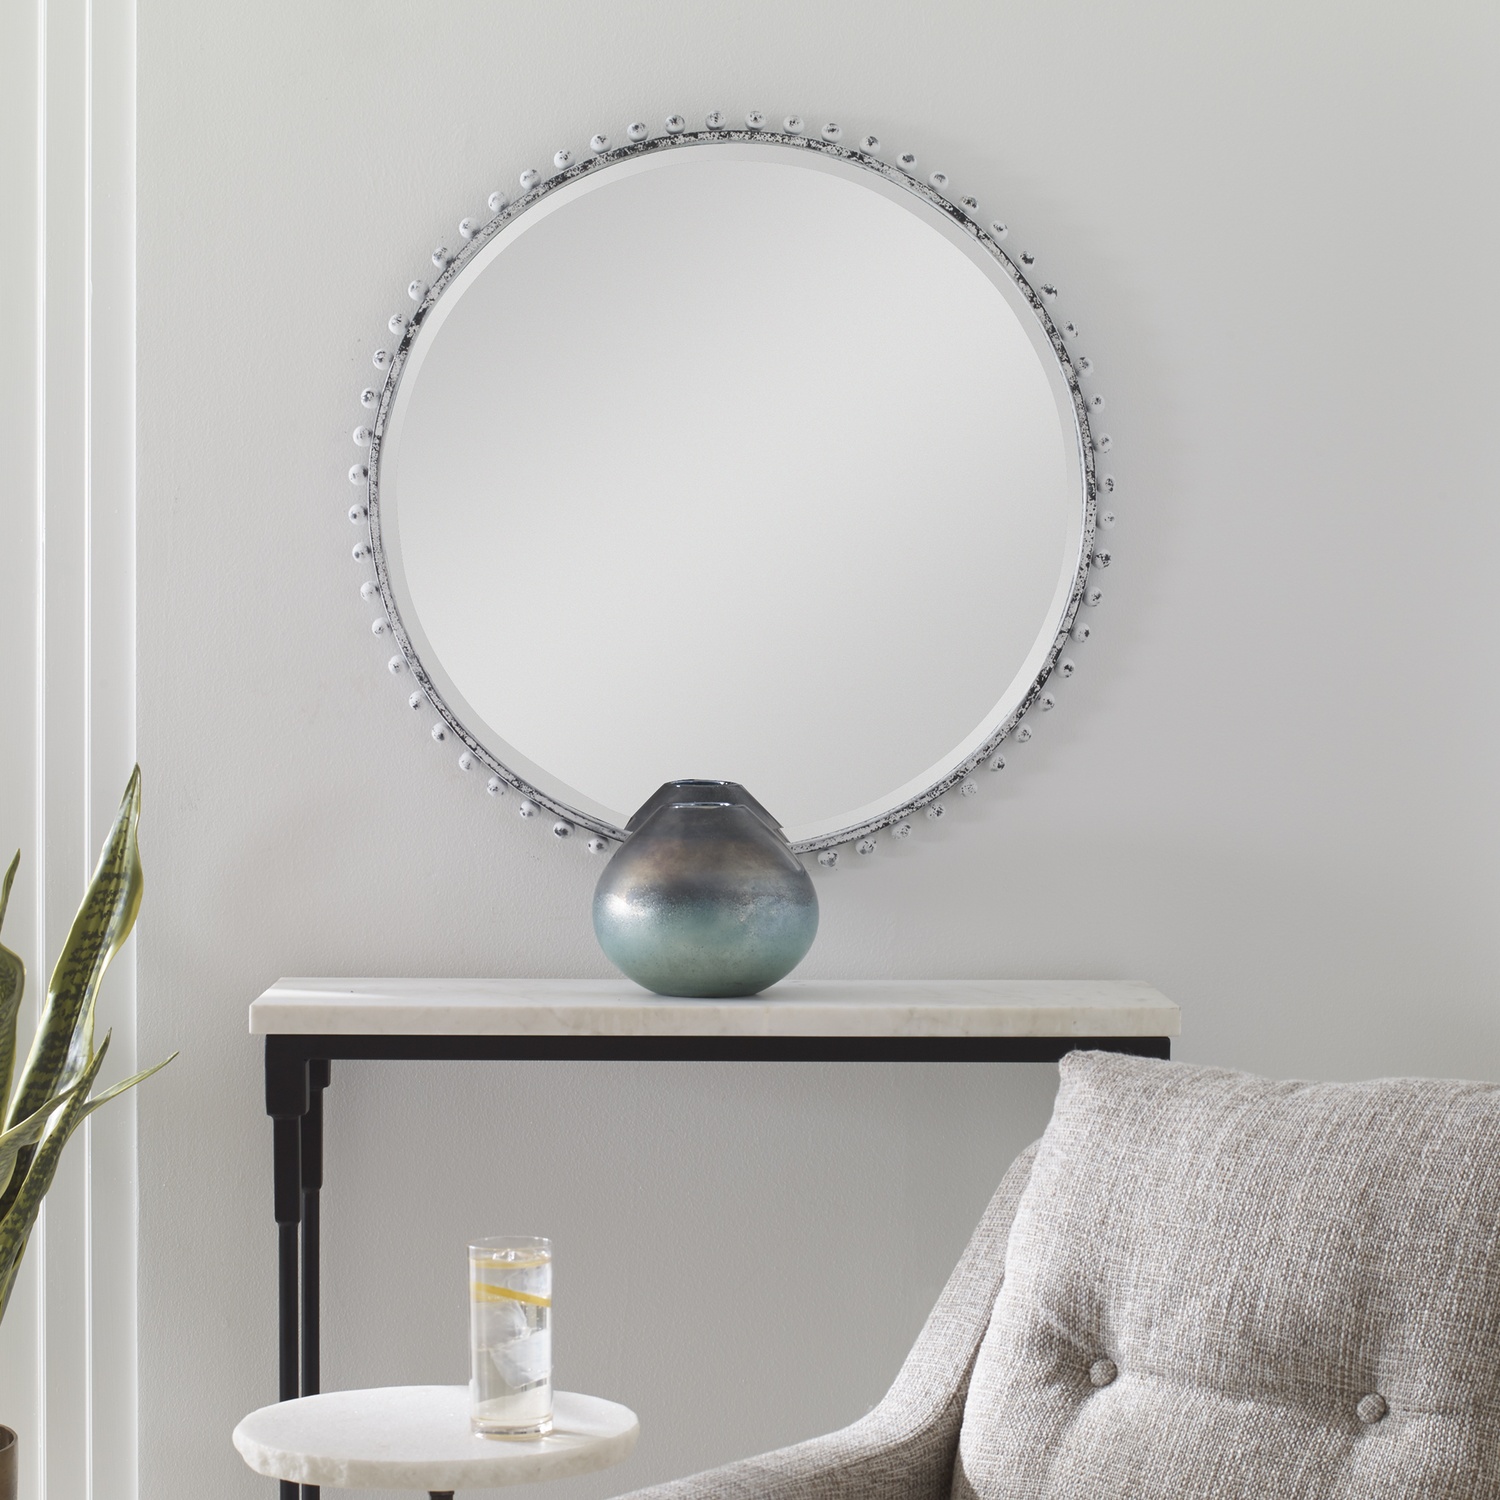 Taza-Aged White Round Mirror